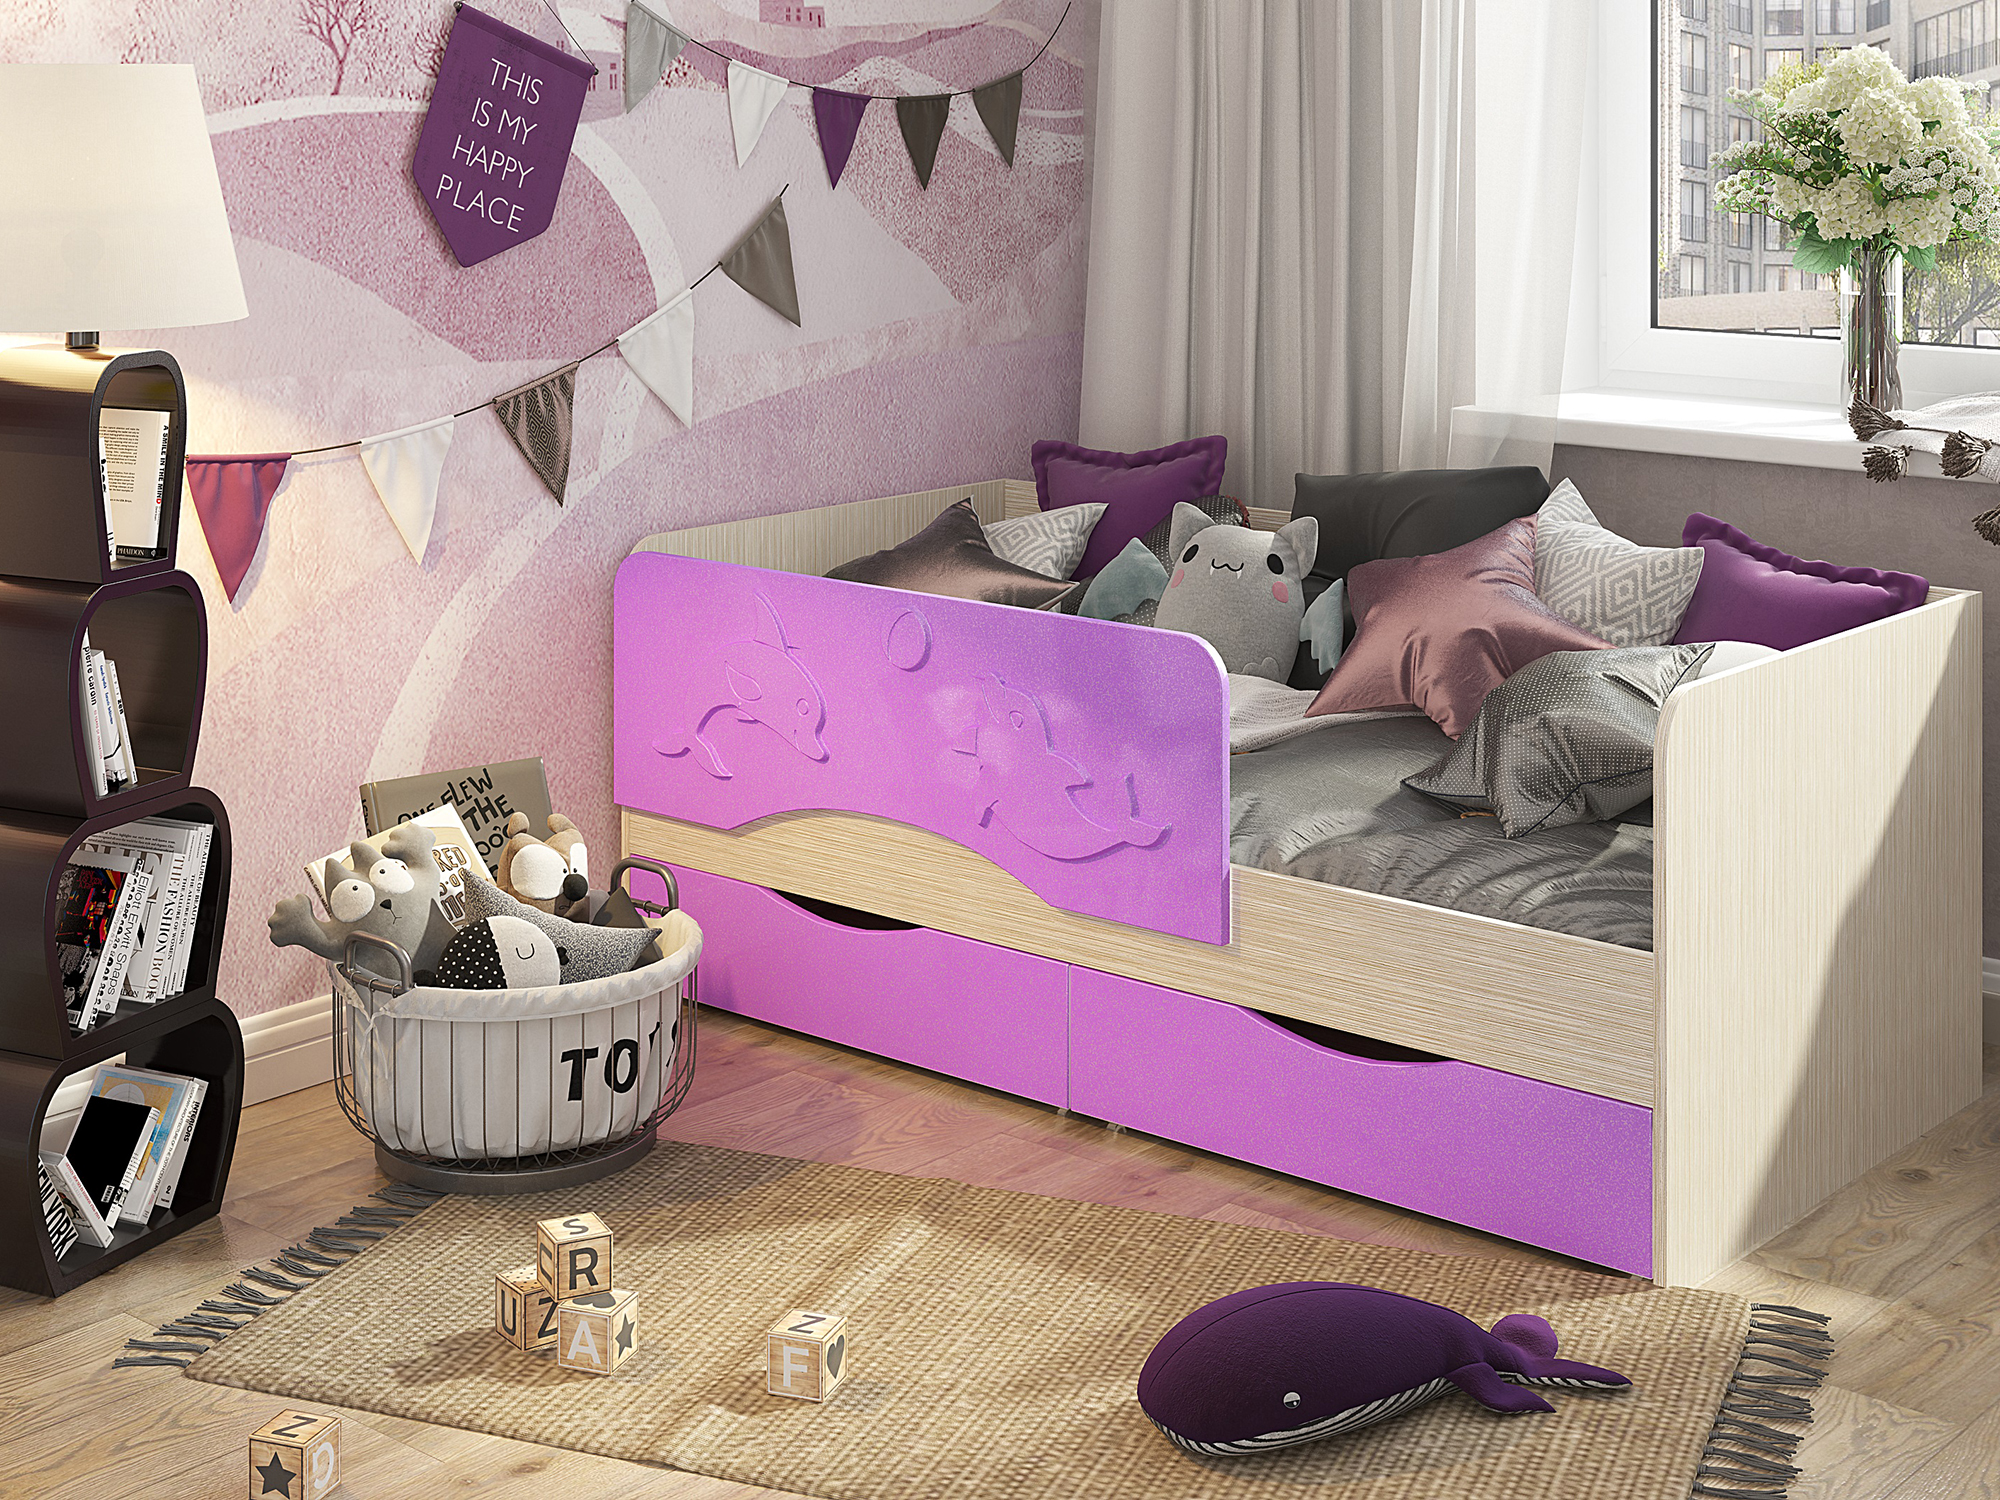 Кровать Алиса (80х160) Сиреневый, Фиолетовый, Бежевый, МДФ, ЛДСП кровать алиса 80х160 сиреневый фиолетовый бежевый мдф лдсп